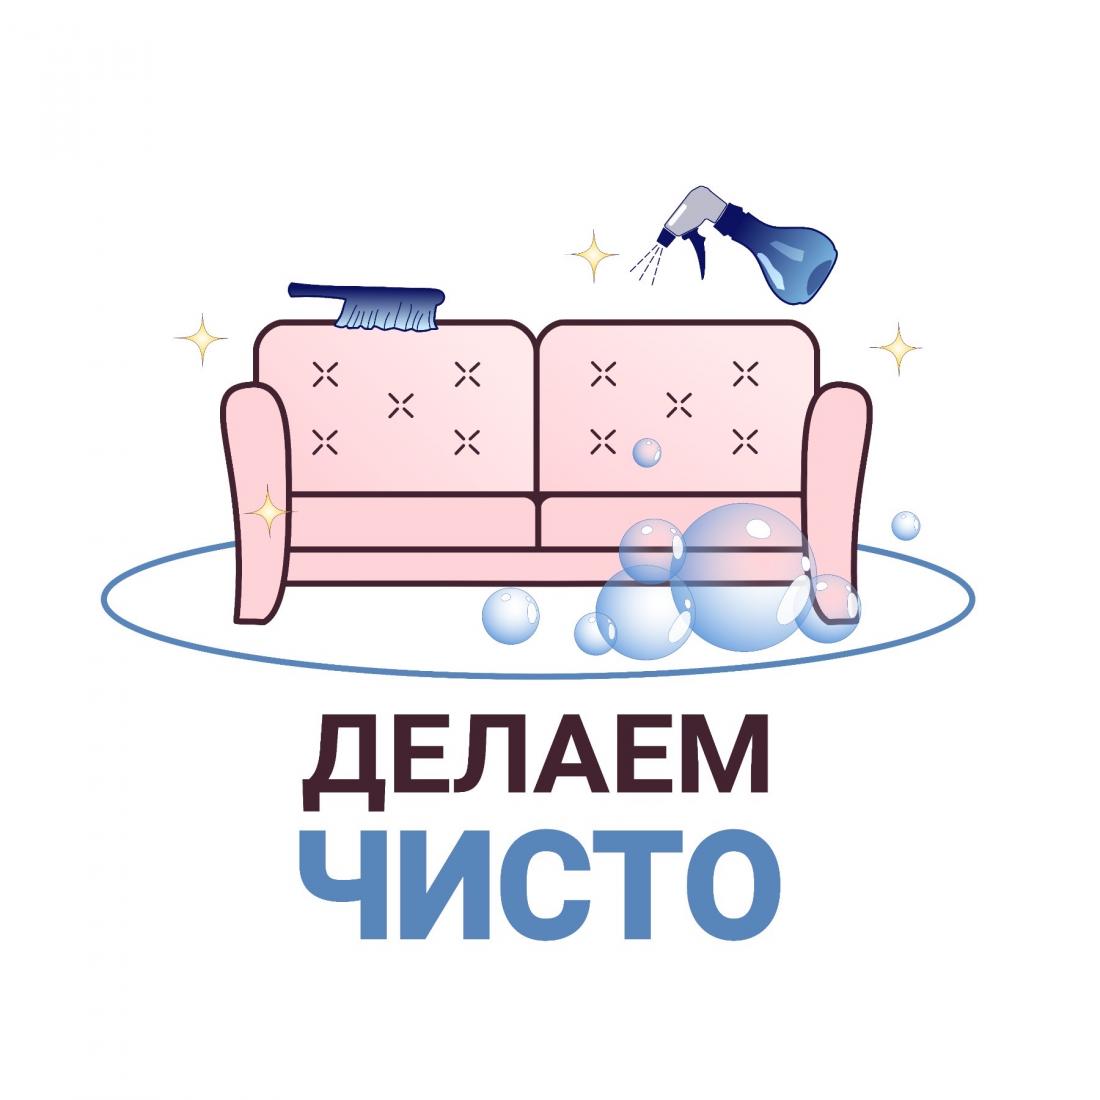 Химчистка мебели от 20 р. в салоне "Делаем чисто" в Бобруйске